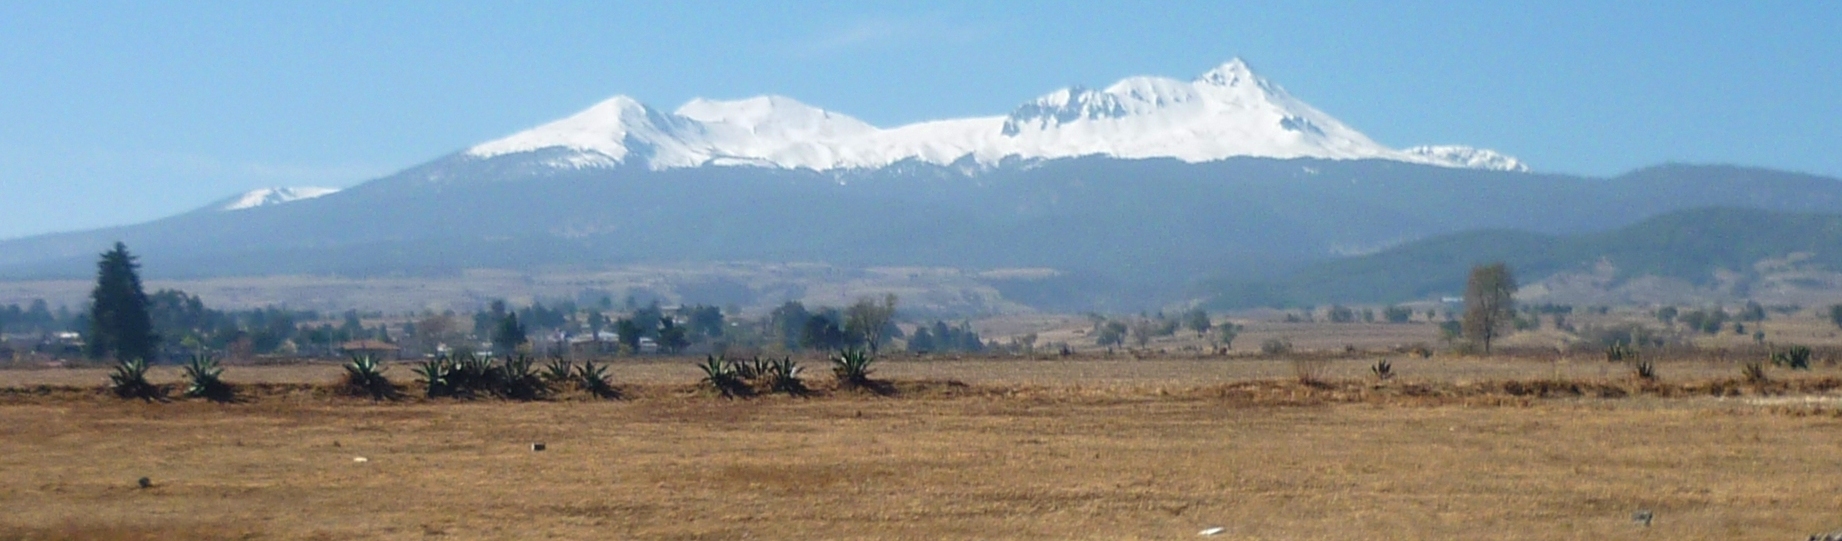 Nevado de Toluca desde la ciudad de toluca 